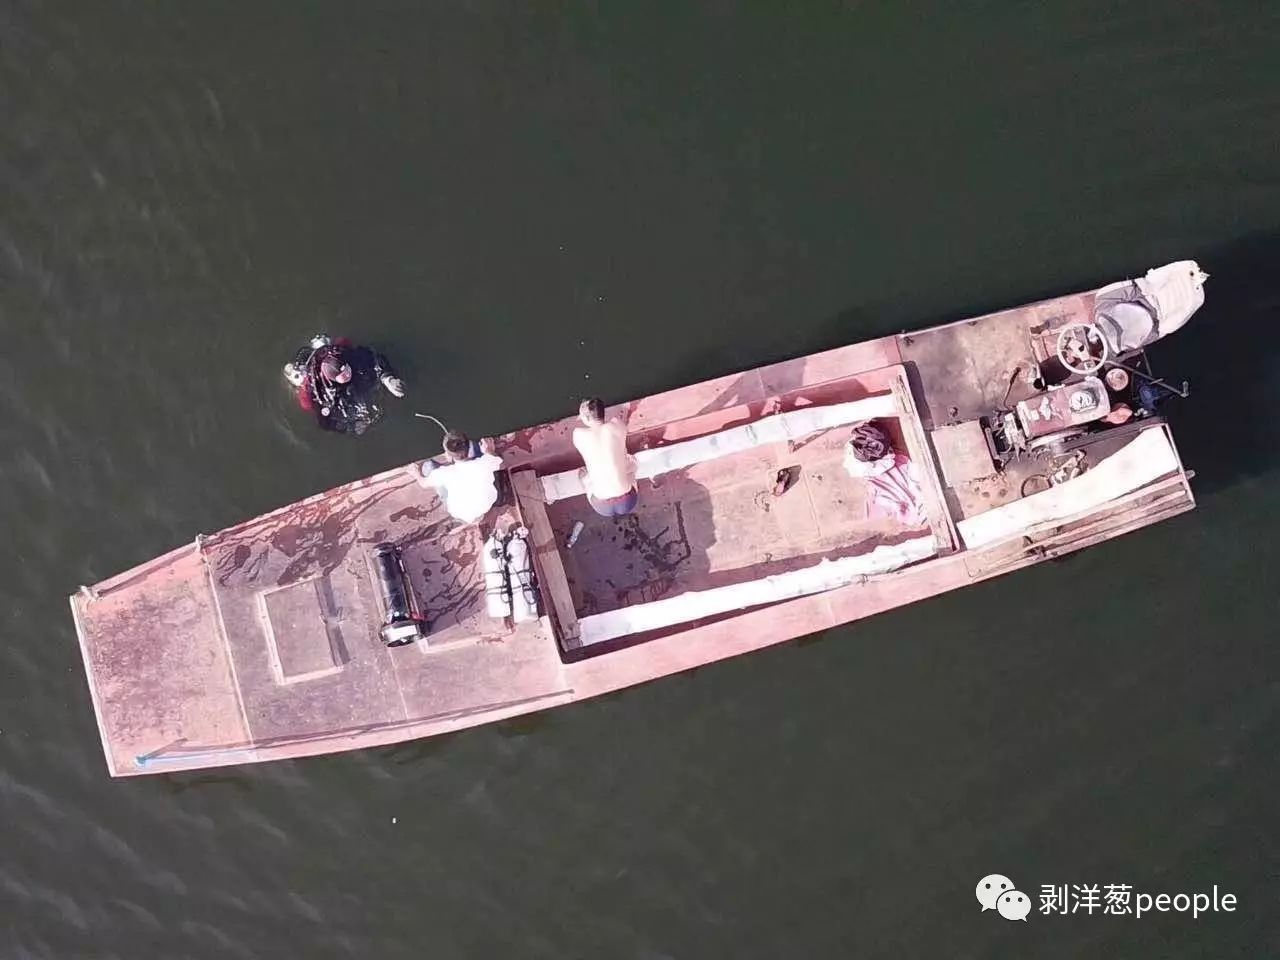 徐海燕用无人机俯拍的船只。新京报记者罗芊 摄